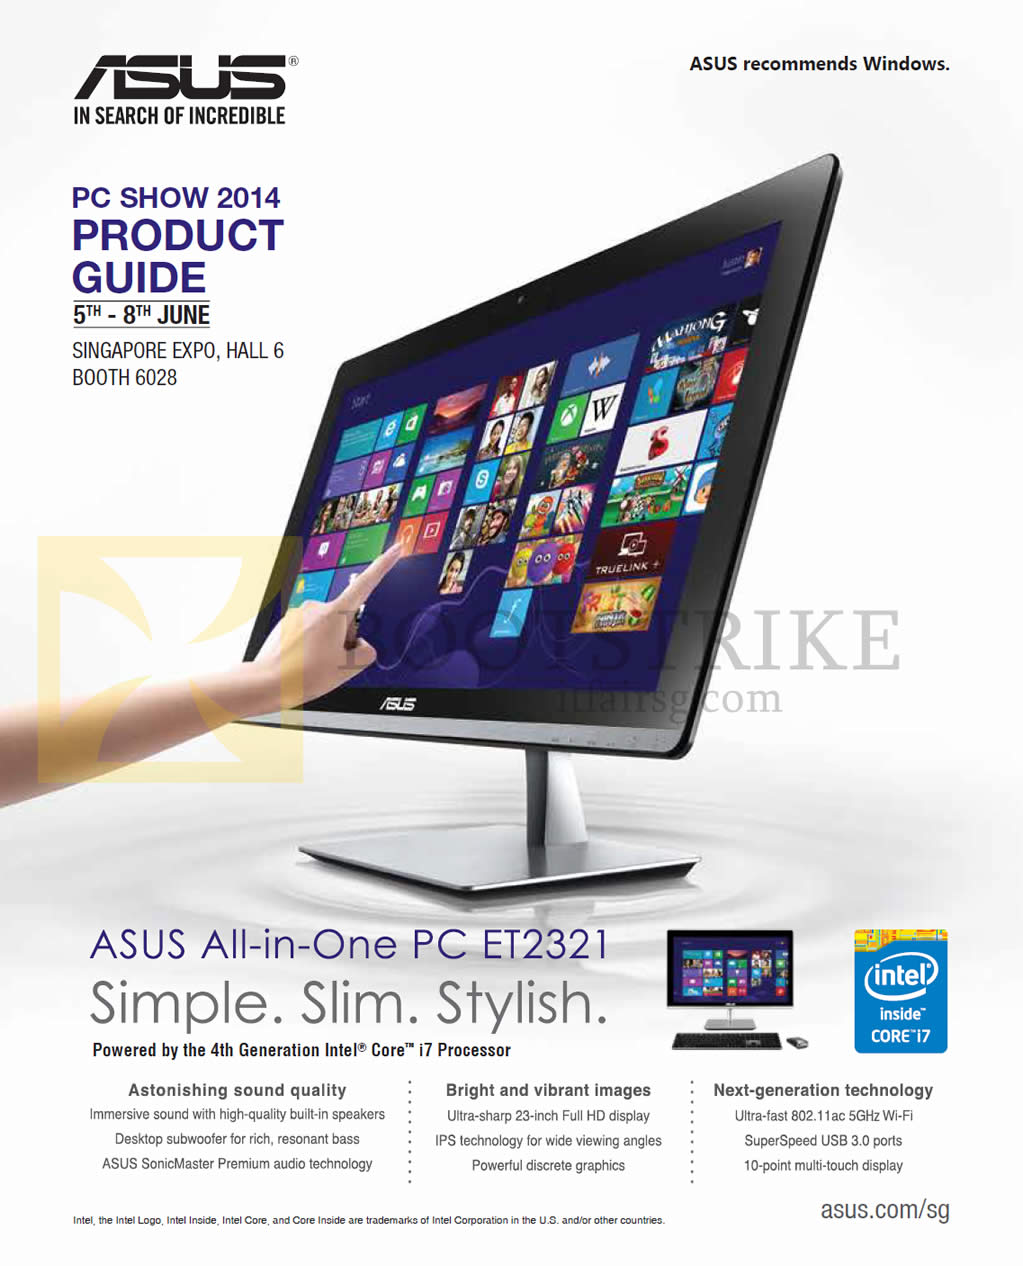 PC SHOW 2014 price list image brochure of ASUS AIO Desktop PC ET2321